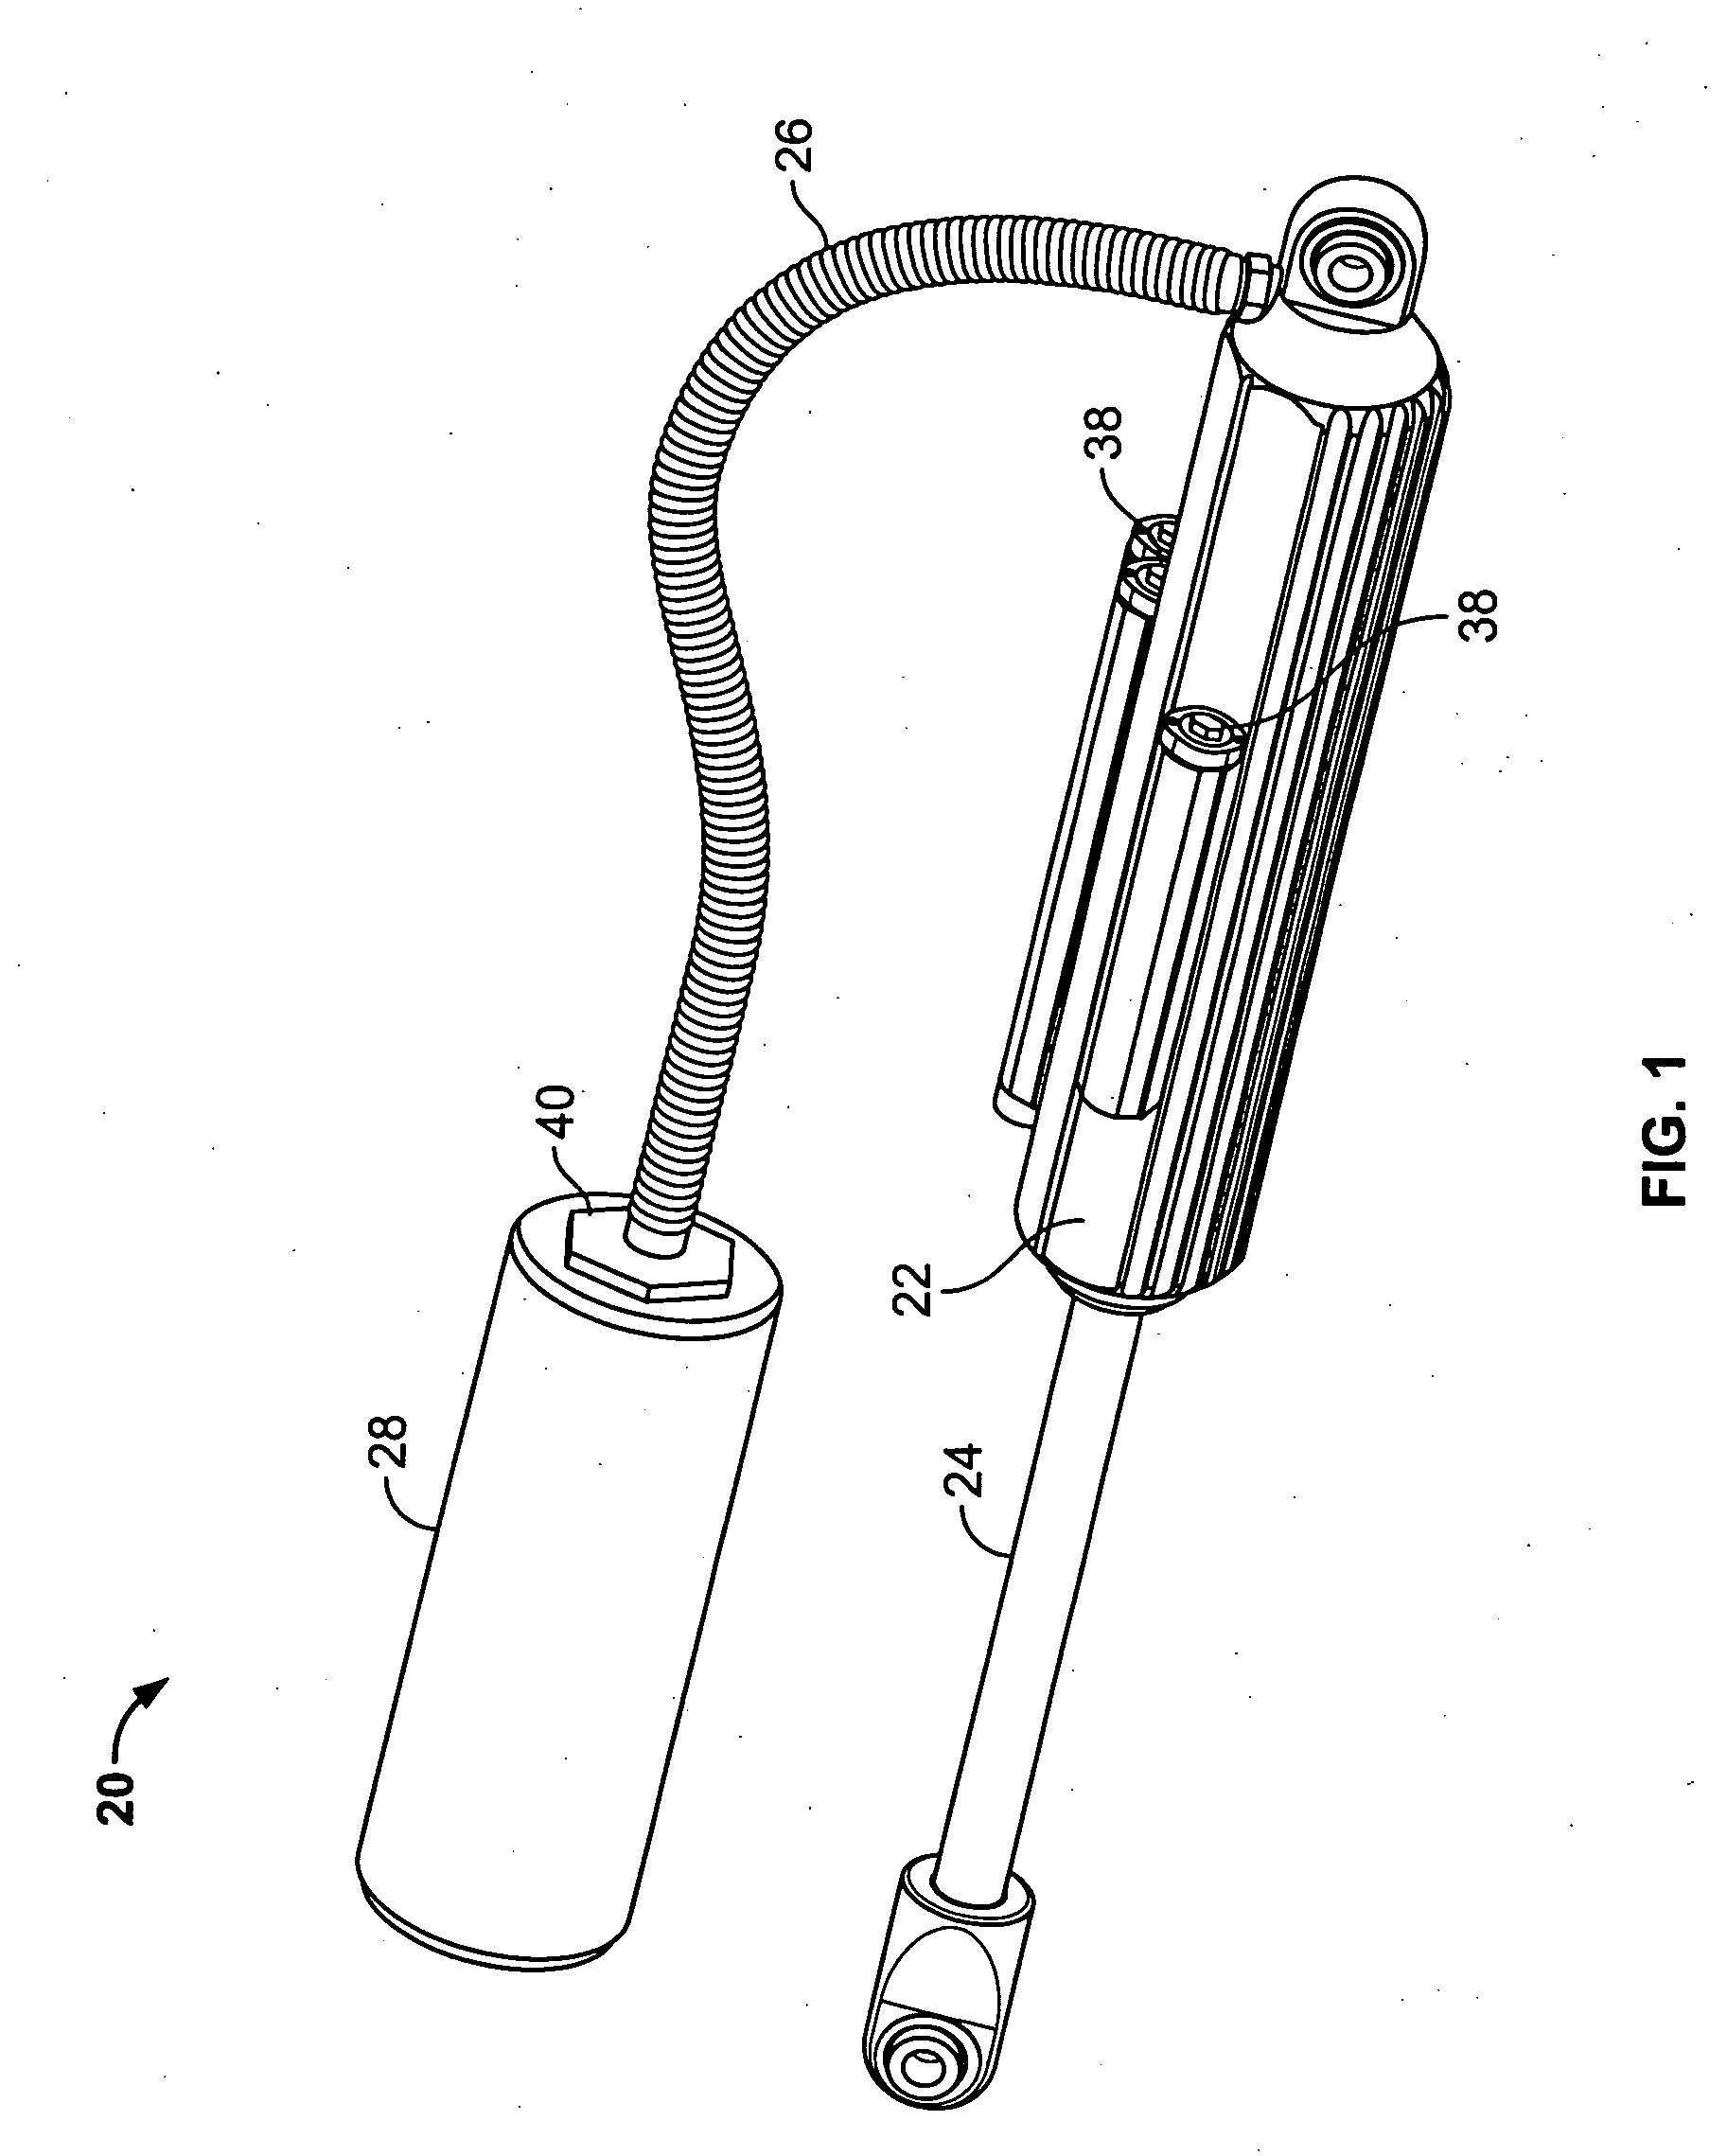 Fluid flow regulation of a vehicle shock absorber/damper